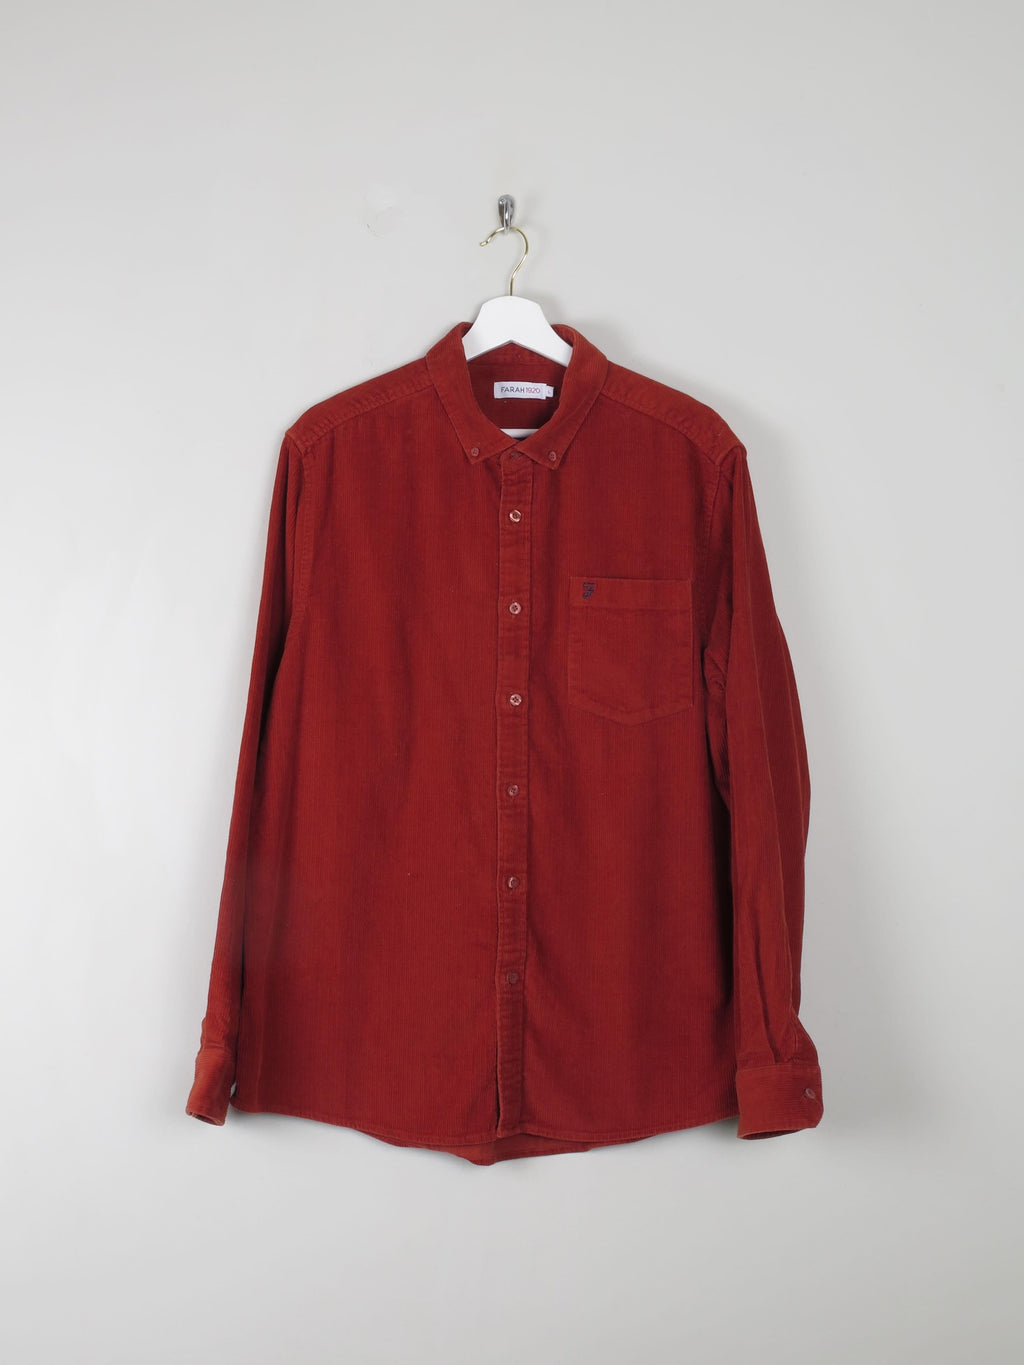 Men's Vintage Style Orange Cord Shirt By Farrah L